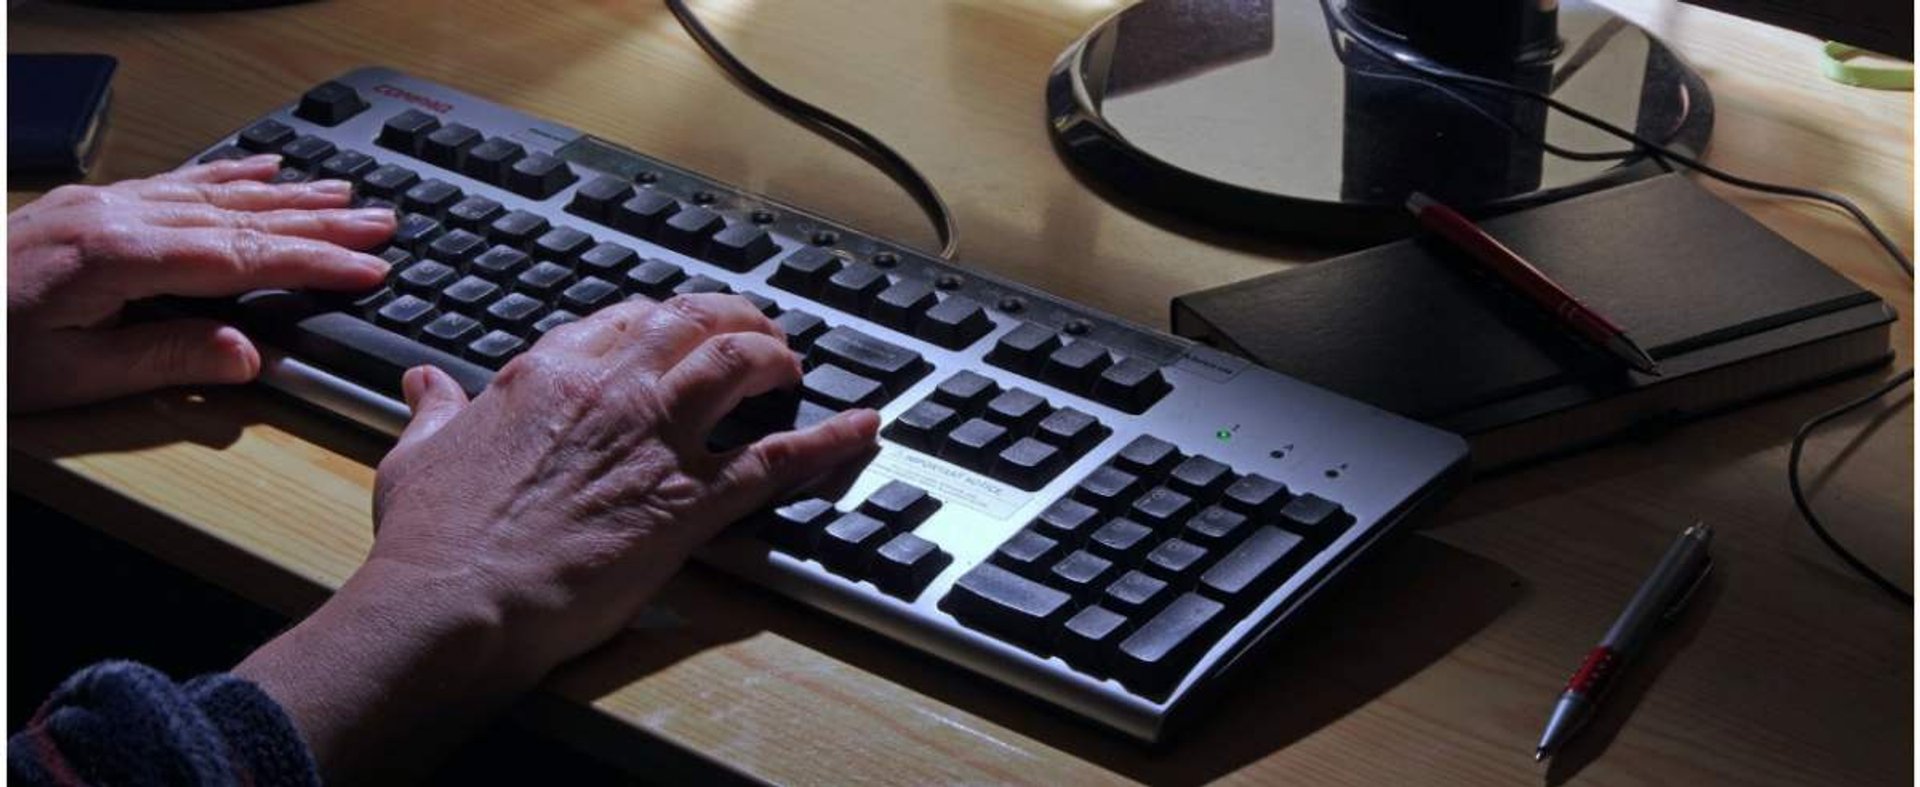 PHOTO: ZOFIA I MAREK BAZAK / EAST NEWS N/Z Dlonie na klawiaturze komputera, cyberprzestepczosc